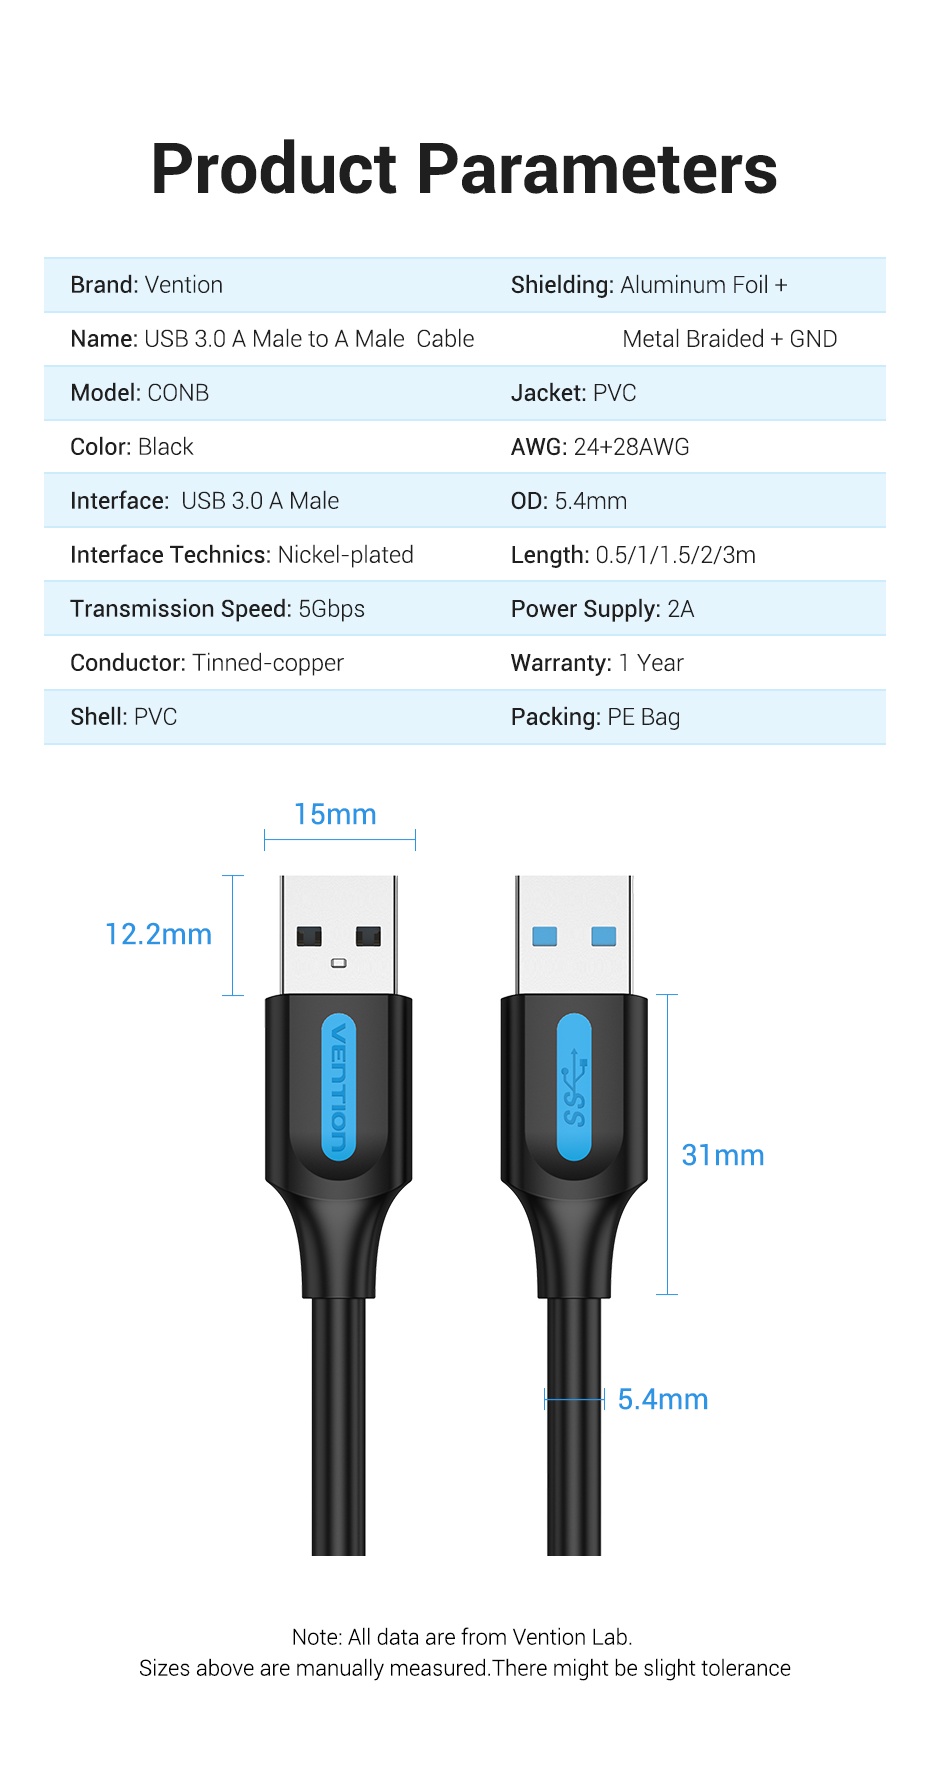 คำอธิบายเพิ่มเติมเกี่ยวกับ Vention สายเคเบิล USB 3.0 ขั้วต่อ ตัวผู้ 5Gbs ความเร็วสูง USB สําหรับถ่ายโอนข้อมูล Usb ตัวผู้ ไป ตัวผู้ แล็ปท็อป เดสก์ท็อป พีซี ปากกาแท็บเล็ต สมาร์ททีวี